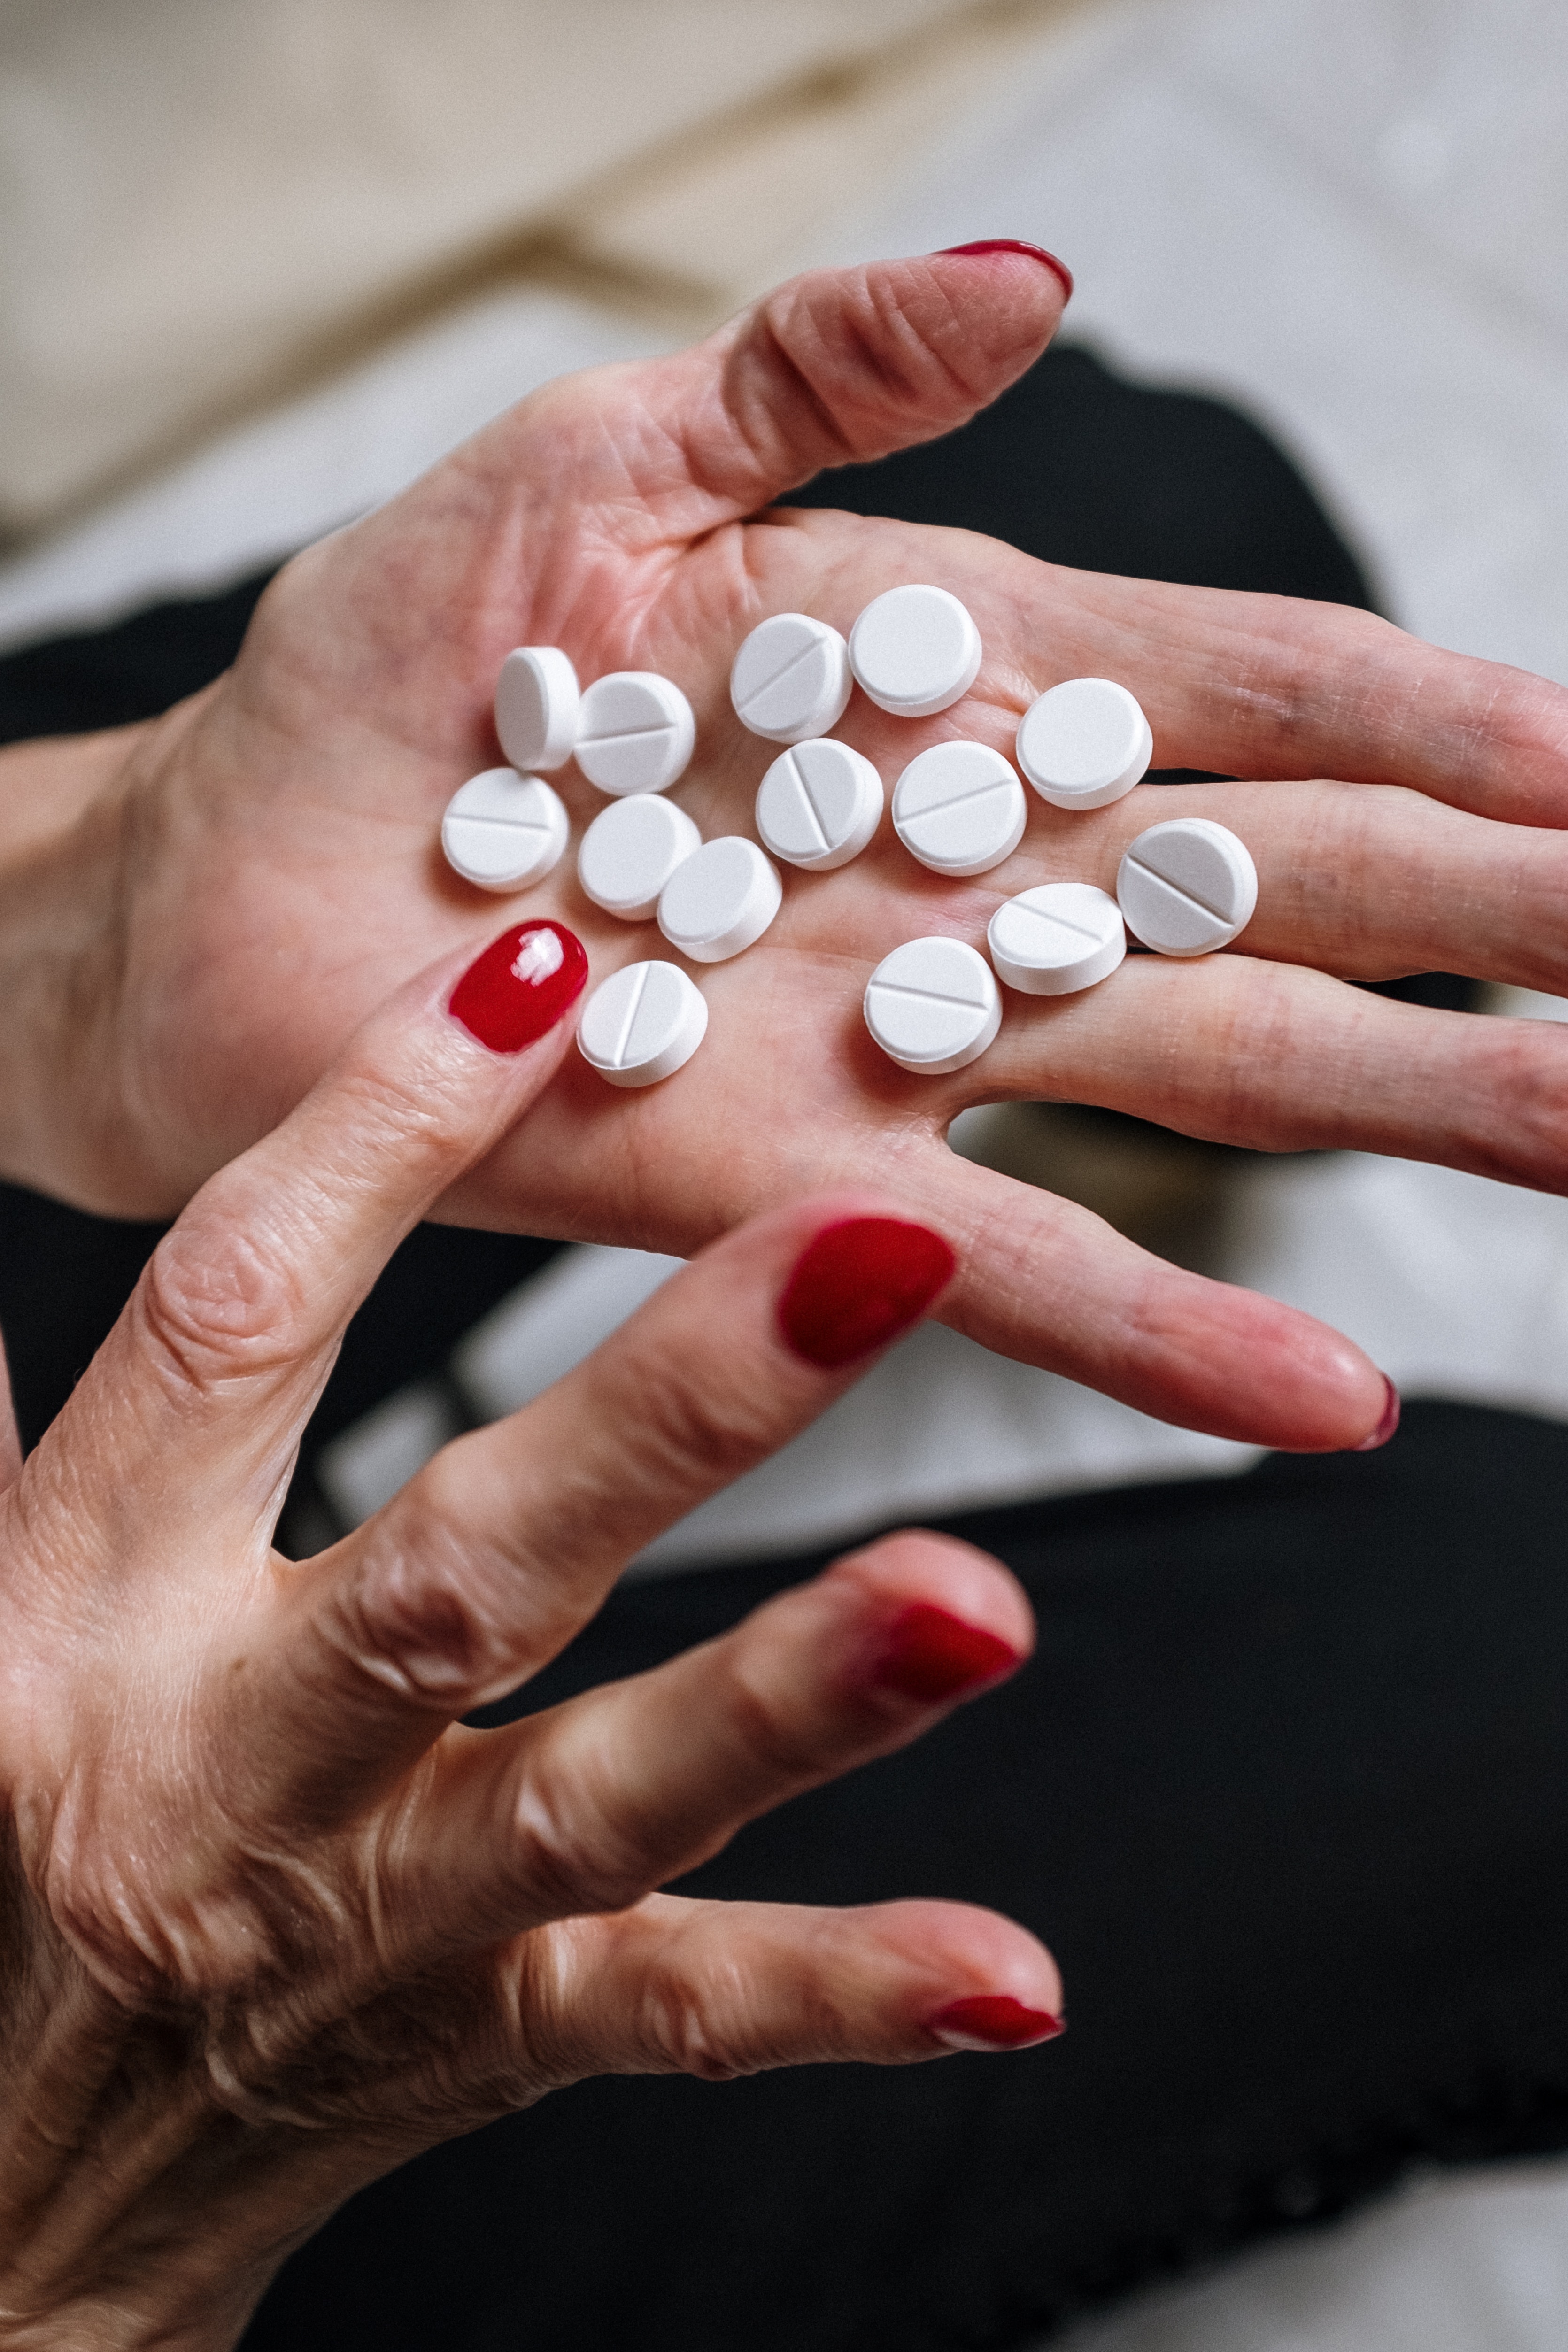 I en hand ligger ett tiotal vita piller och personen räknar hur många det är som ligger där genom att peka på pillren. Personen har rött nagellack.